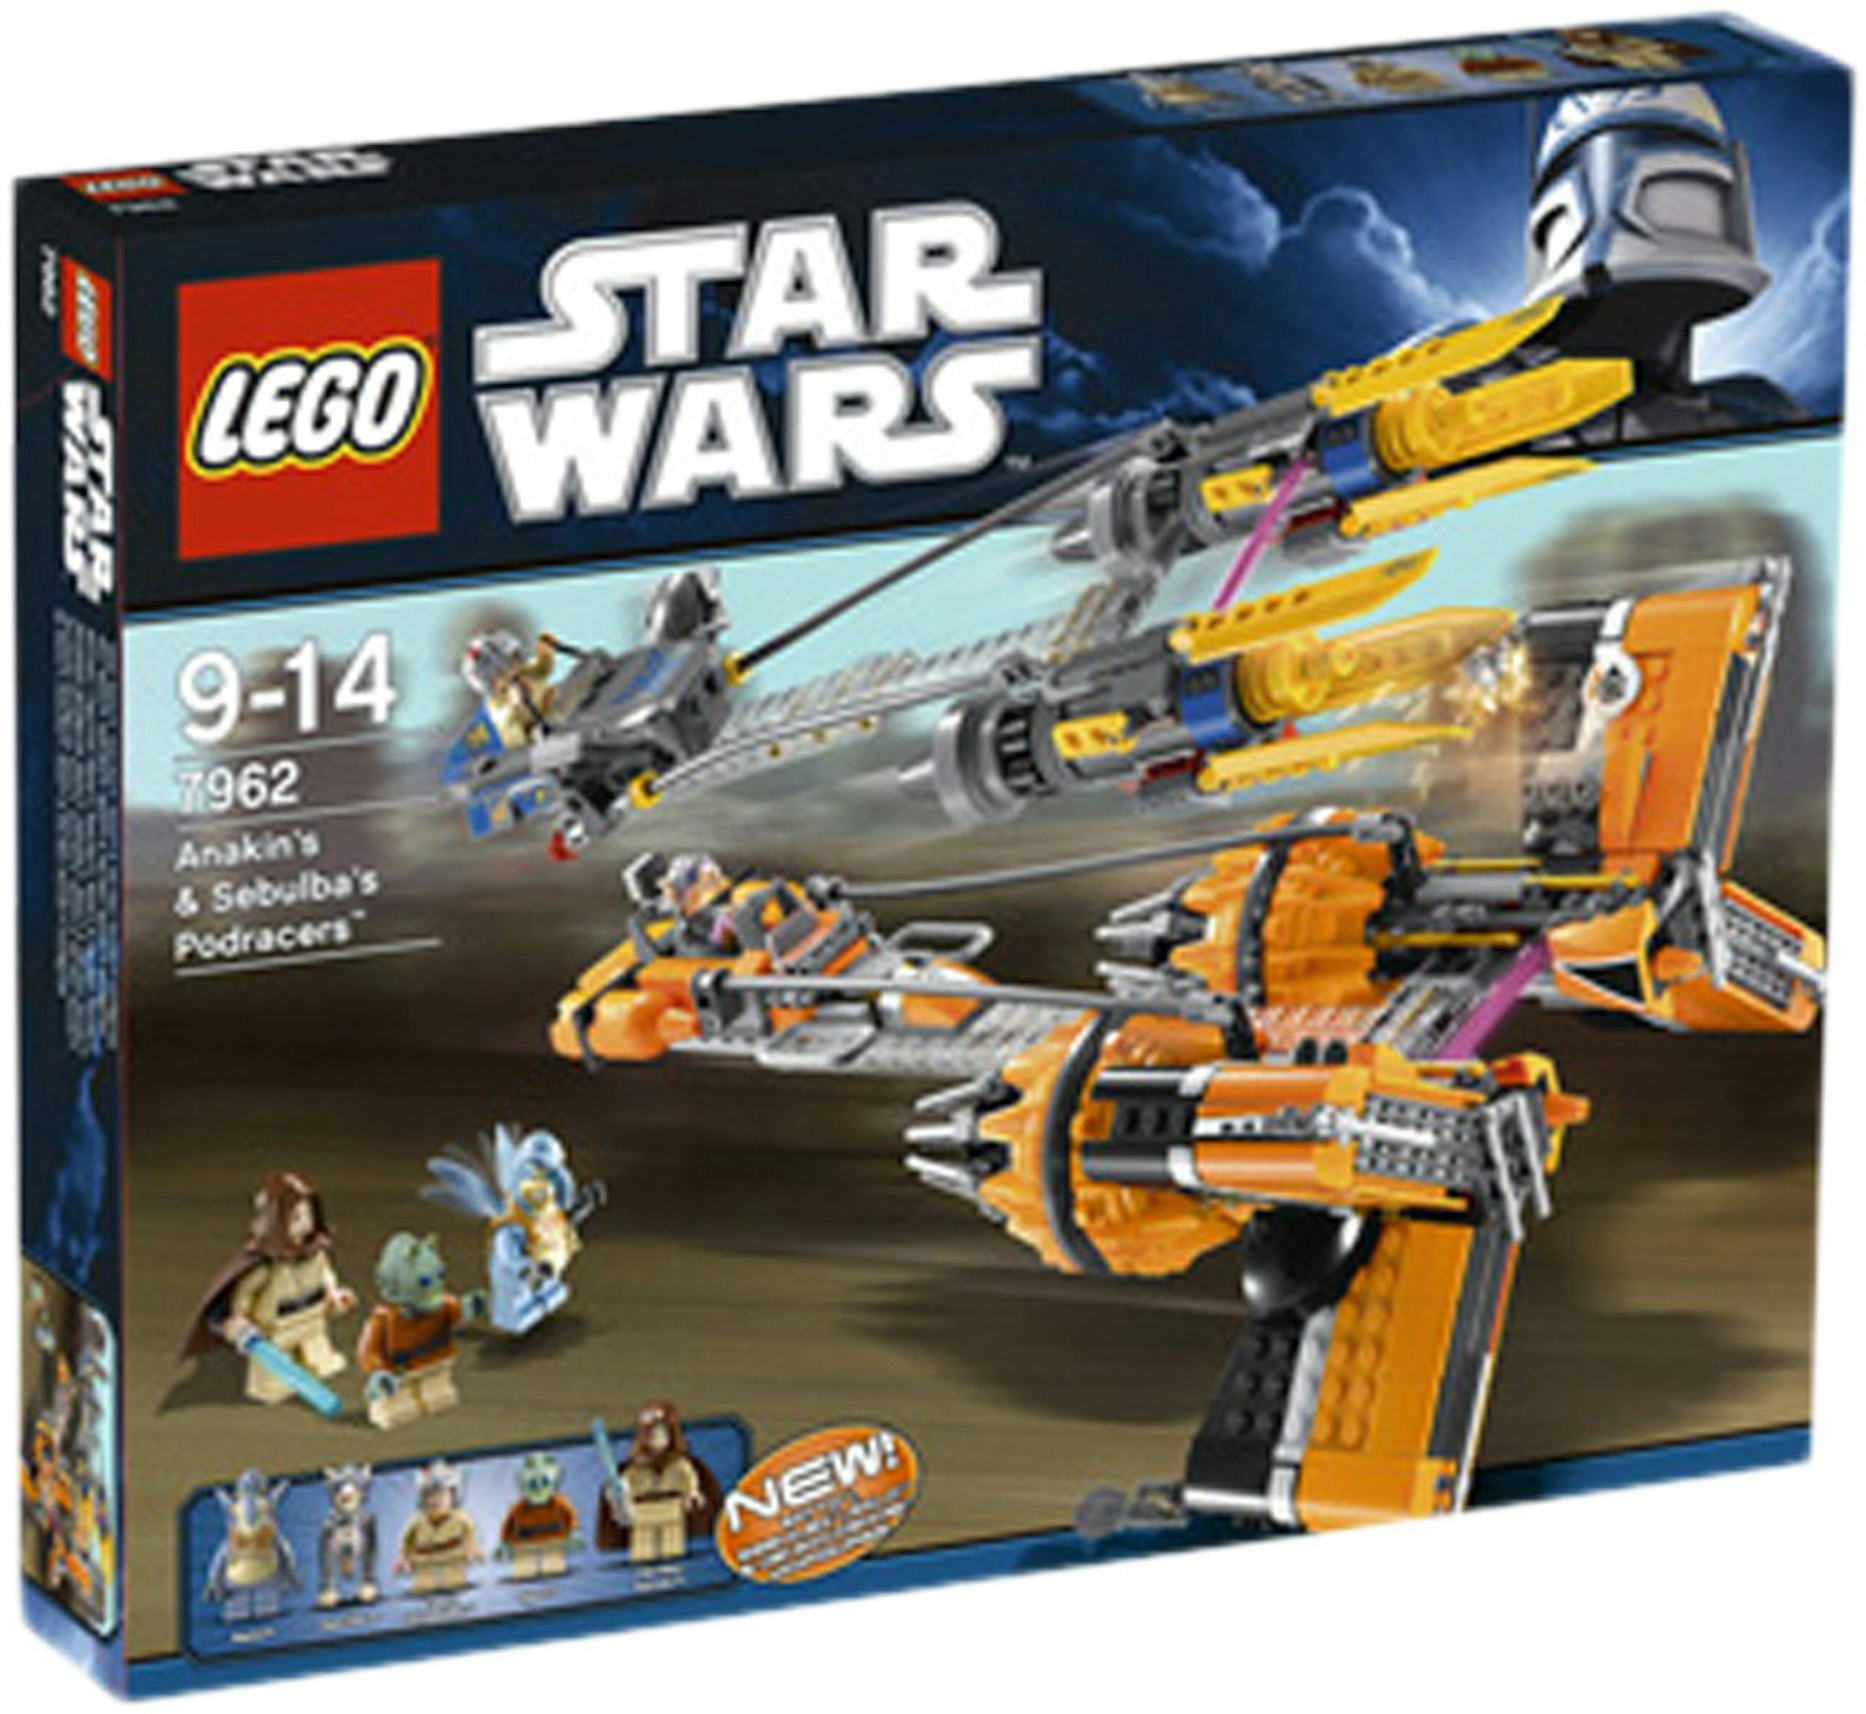 Subjektiv Undtagelse Serrated LEGO Star Wars Anakin Skywalker and Sebulba's Podracers Set 7962 - US